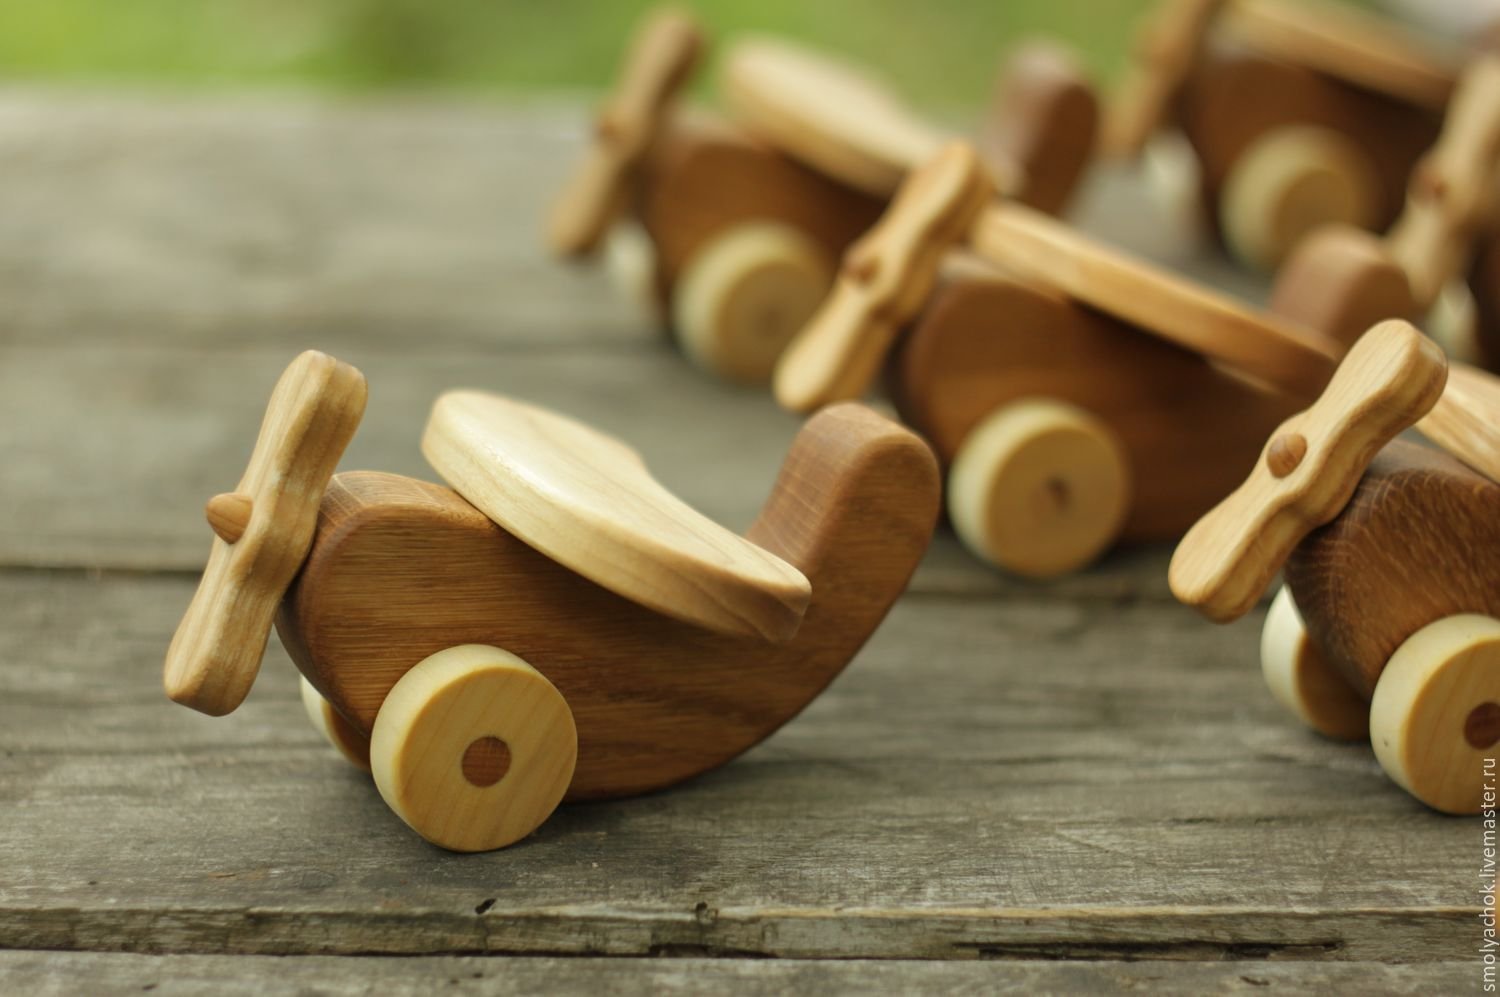 Wooden master. Деревянные игрушки. Игрушки из дерева. Игрушки из дерева для детей. Изделия из древесины.